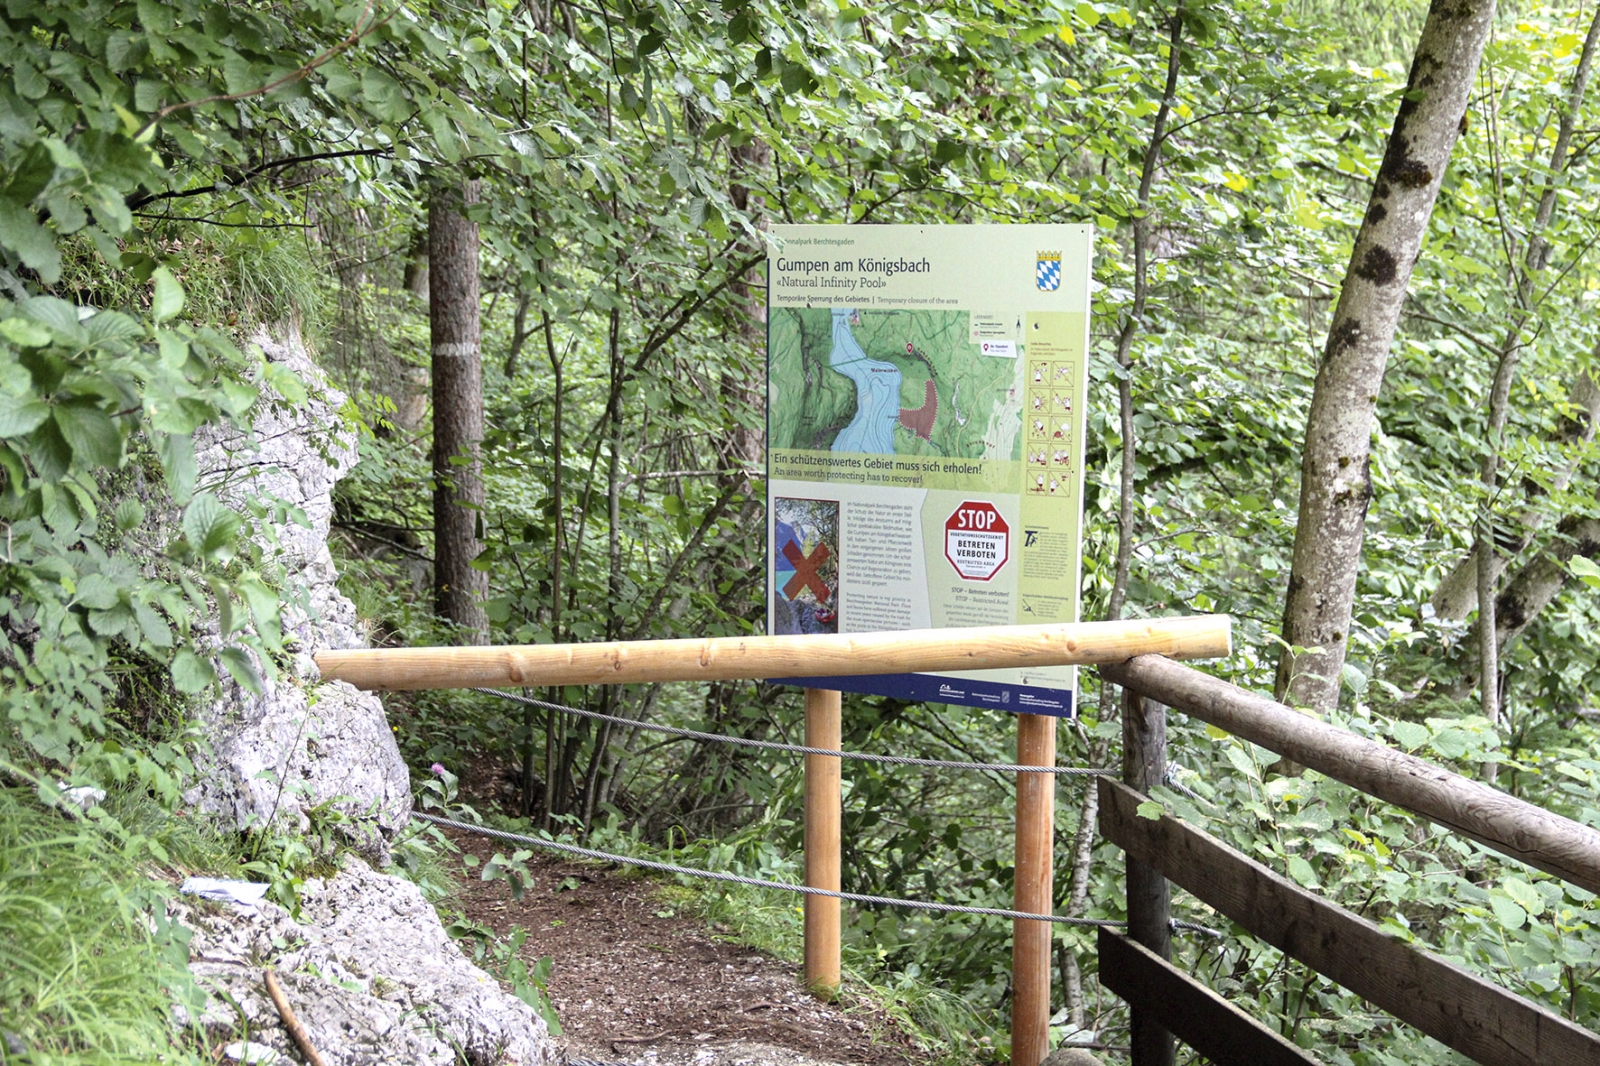 Gumpen am Königsbach in the Berchtesgaden National Park closed